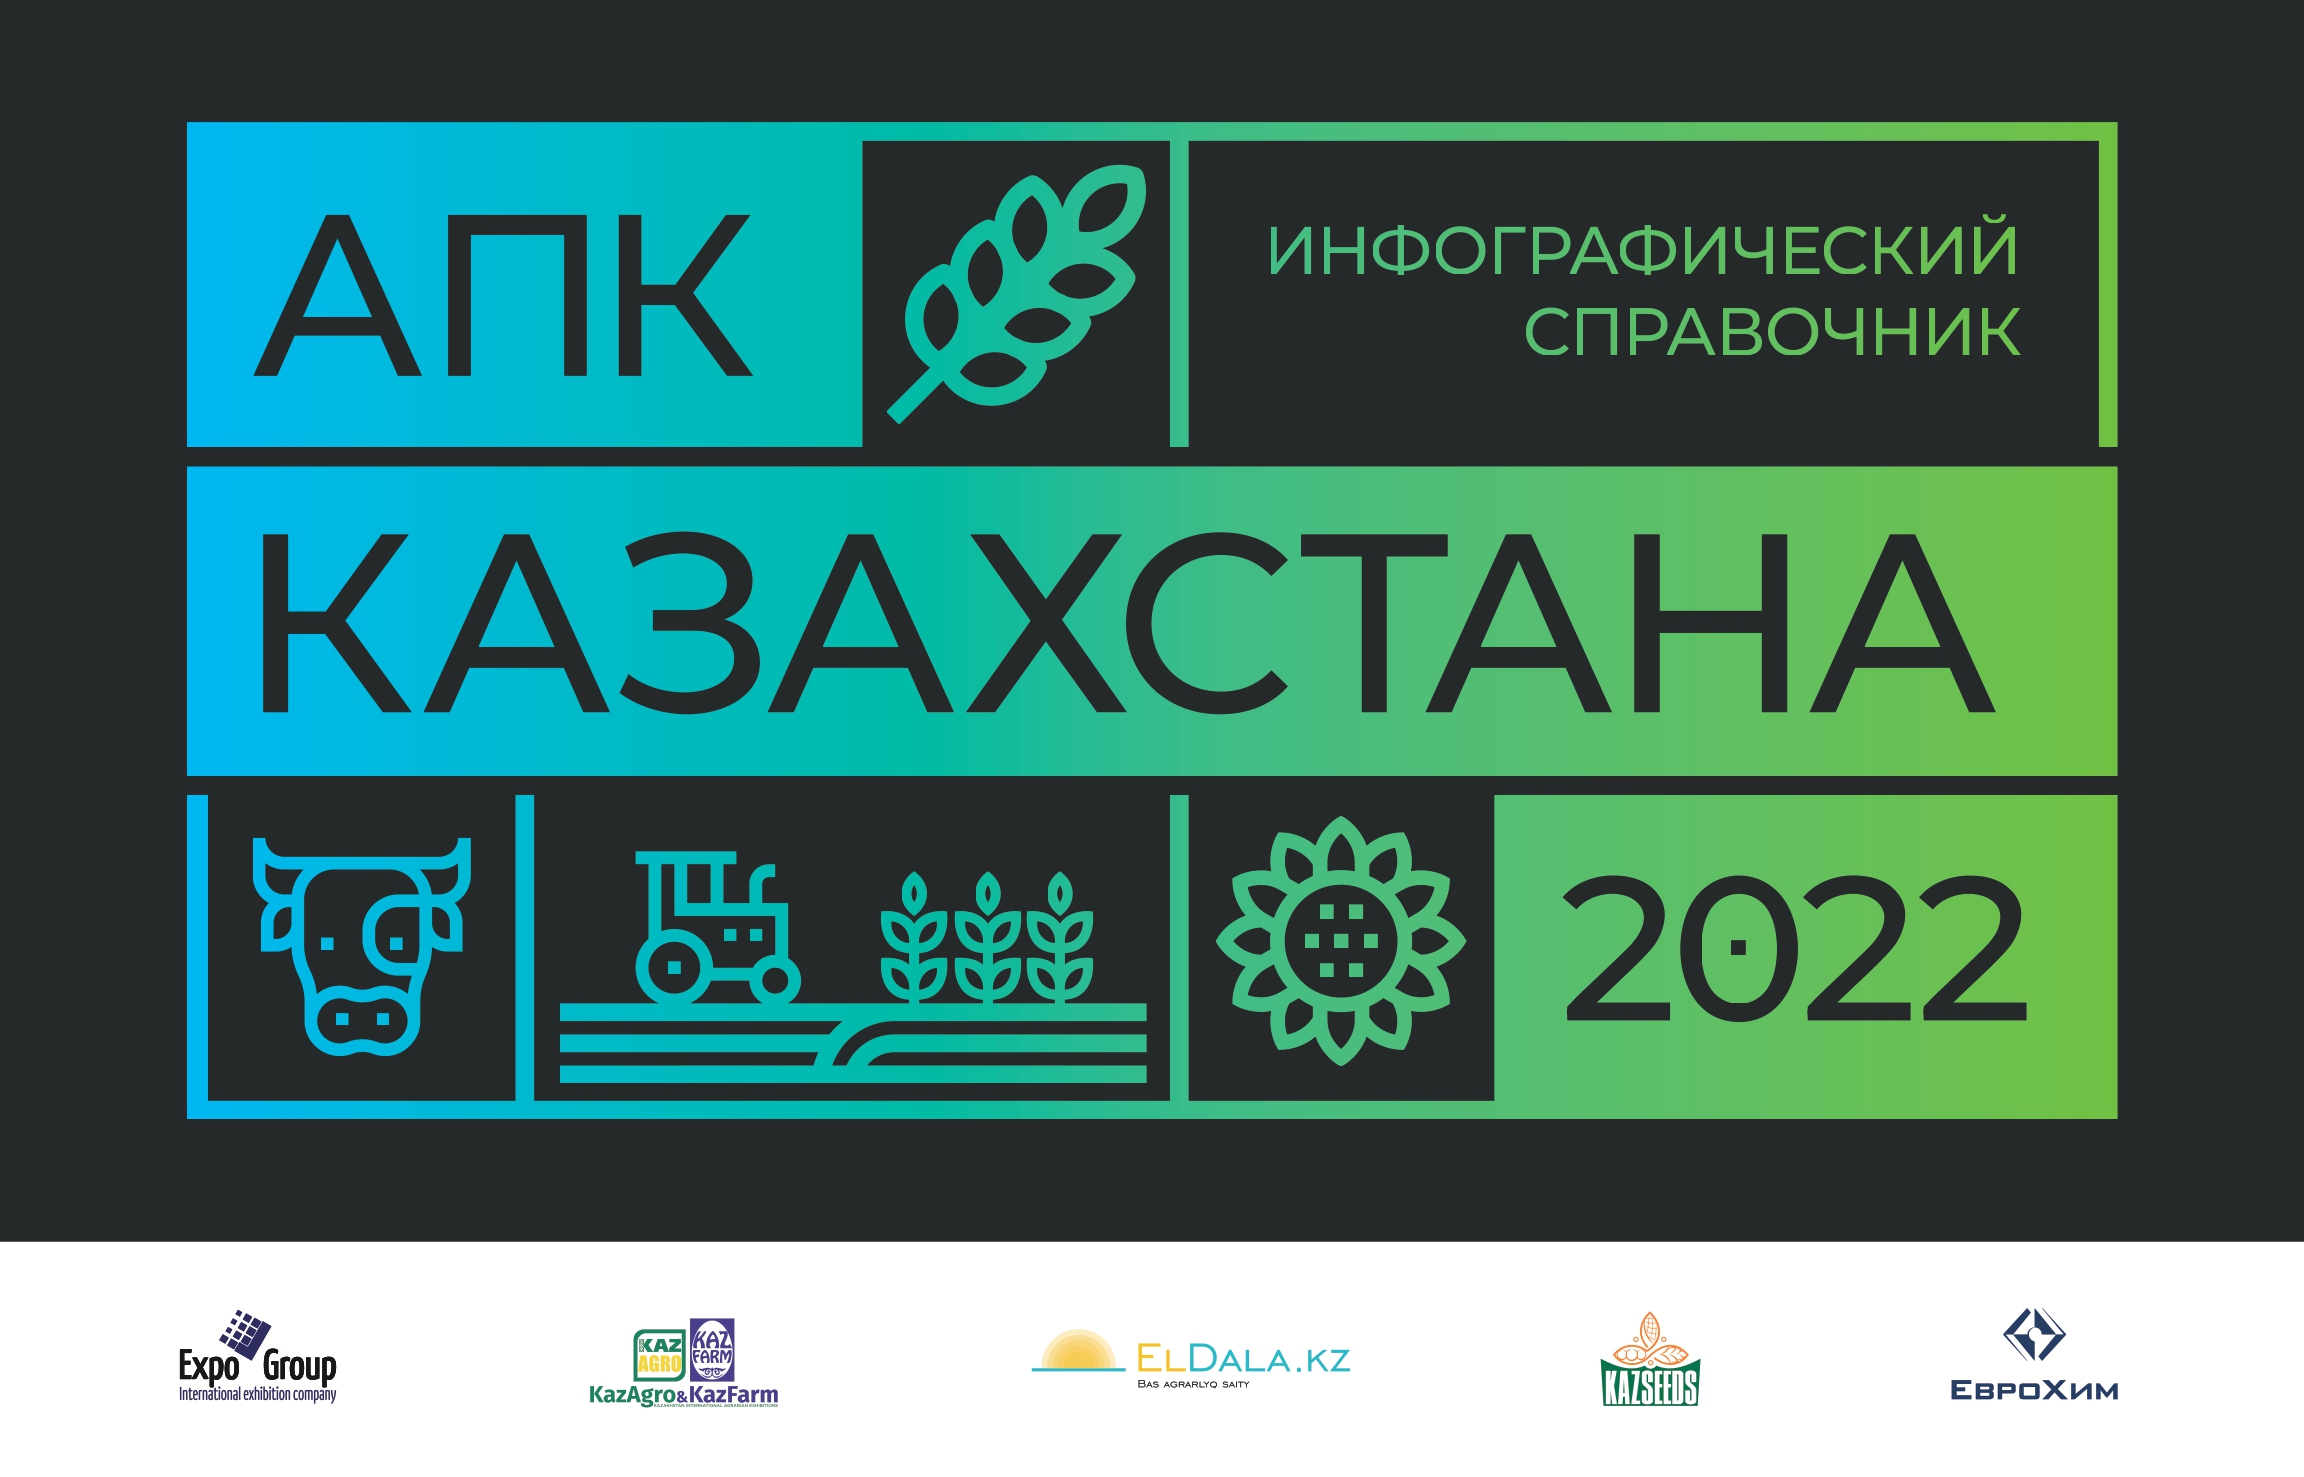 Инфографический справочник АПК Казахстана 2022